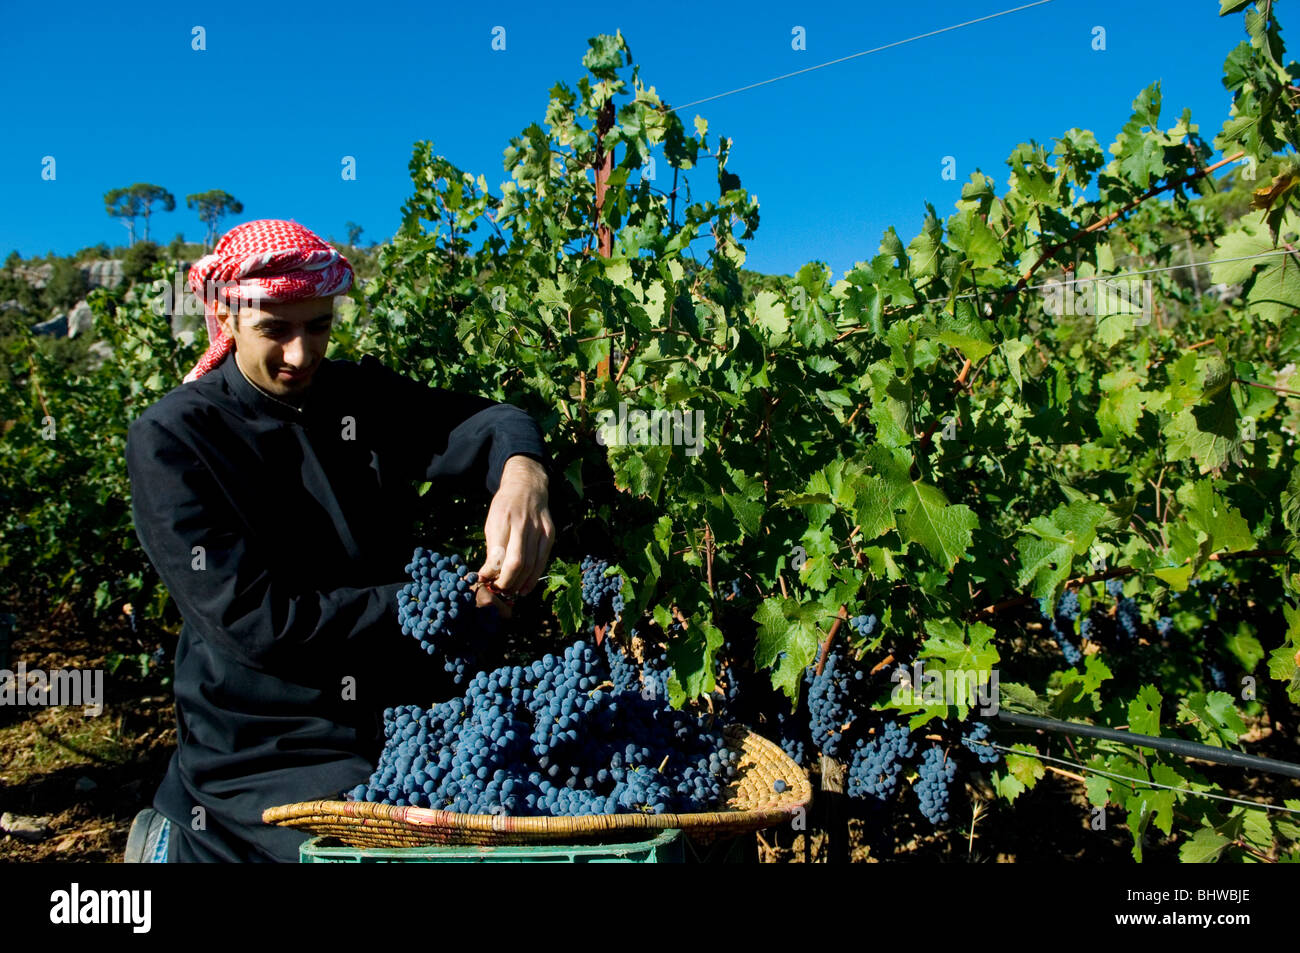 L'arabe agriculteur travaillant dans un vineyard winery Liban Moyen-Orient Asie Banque D'Images